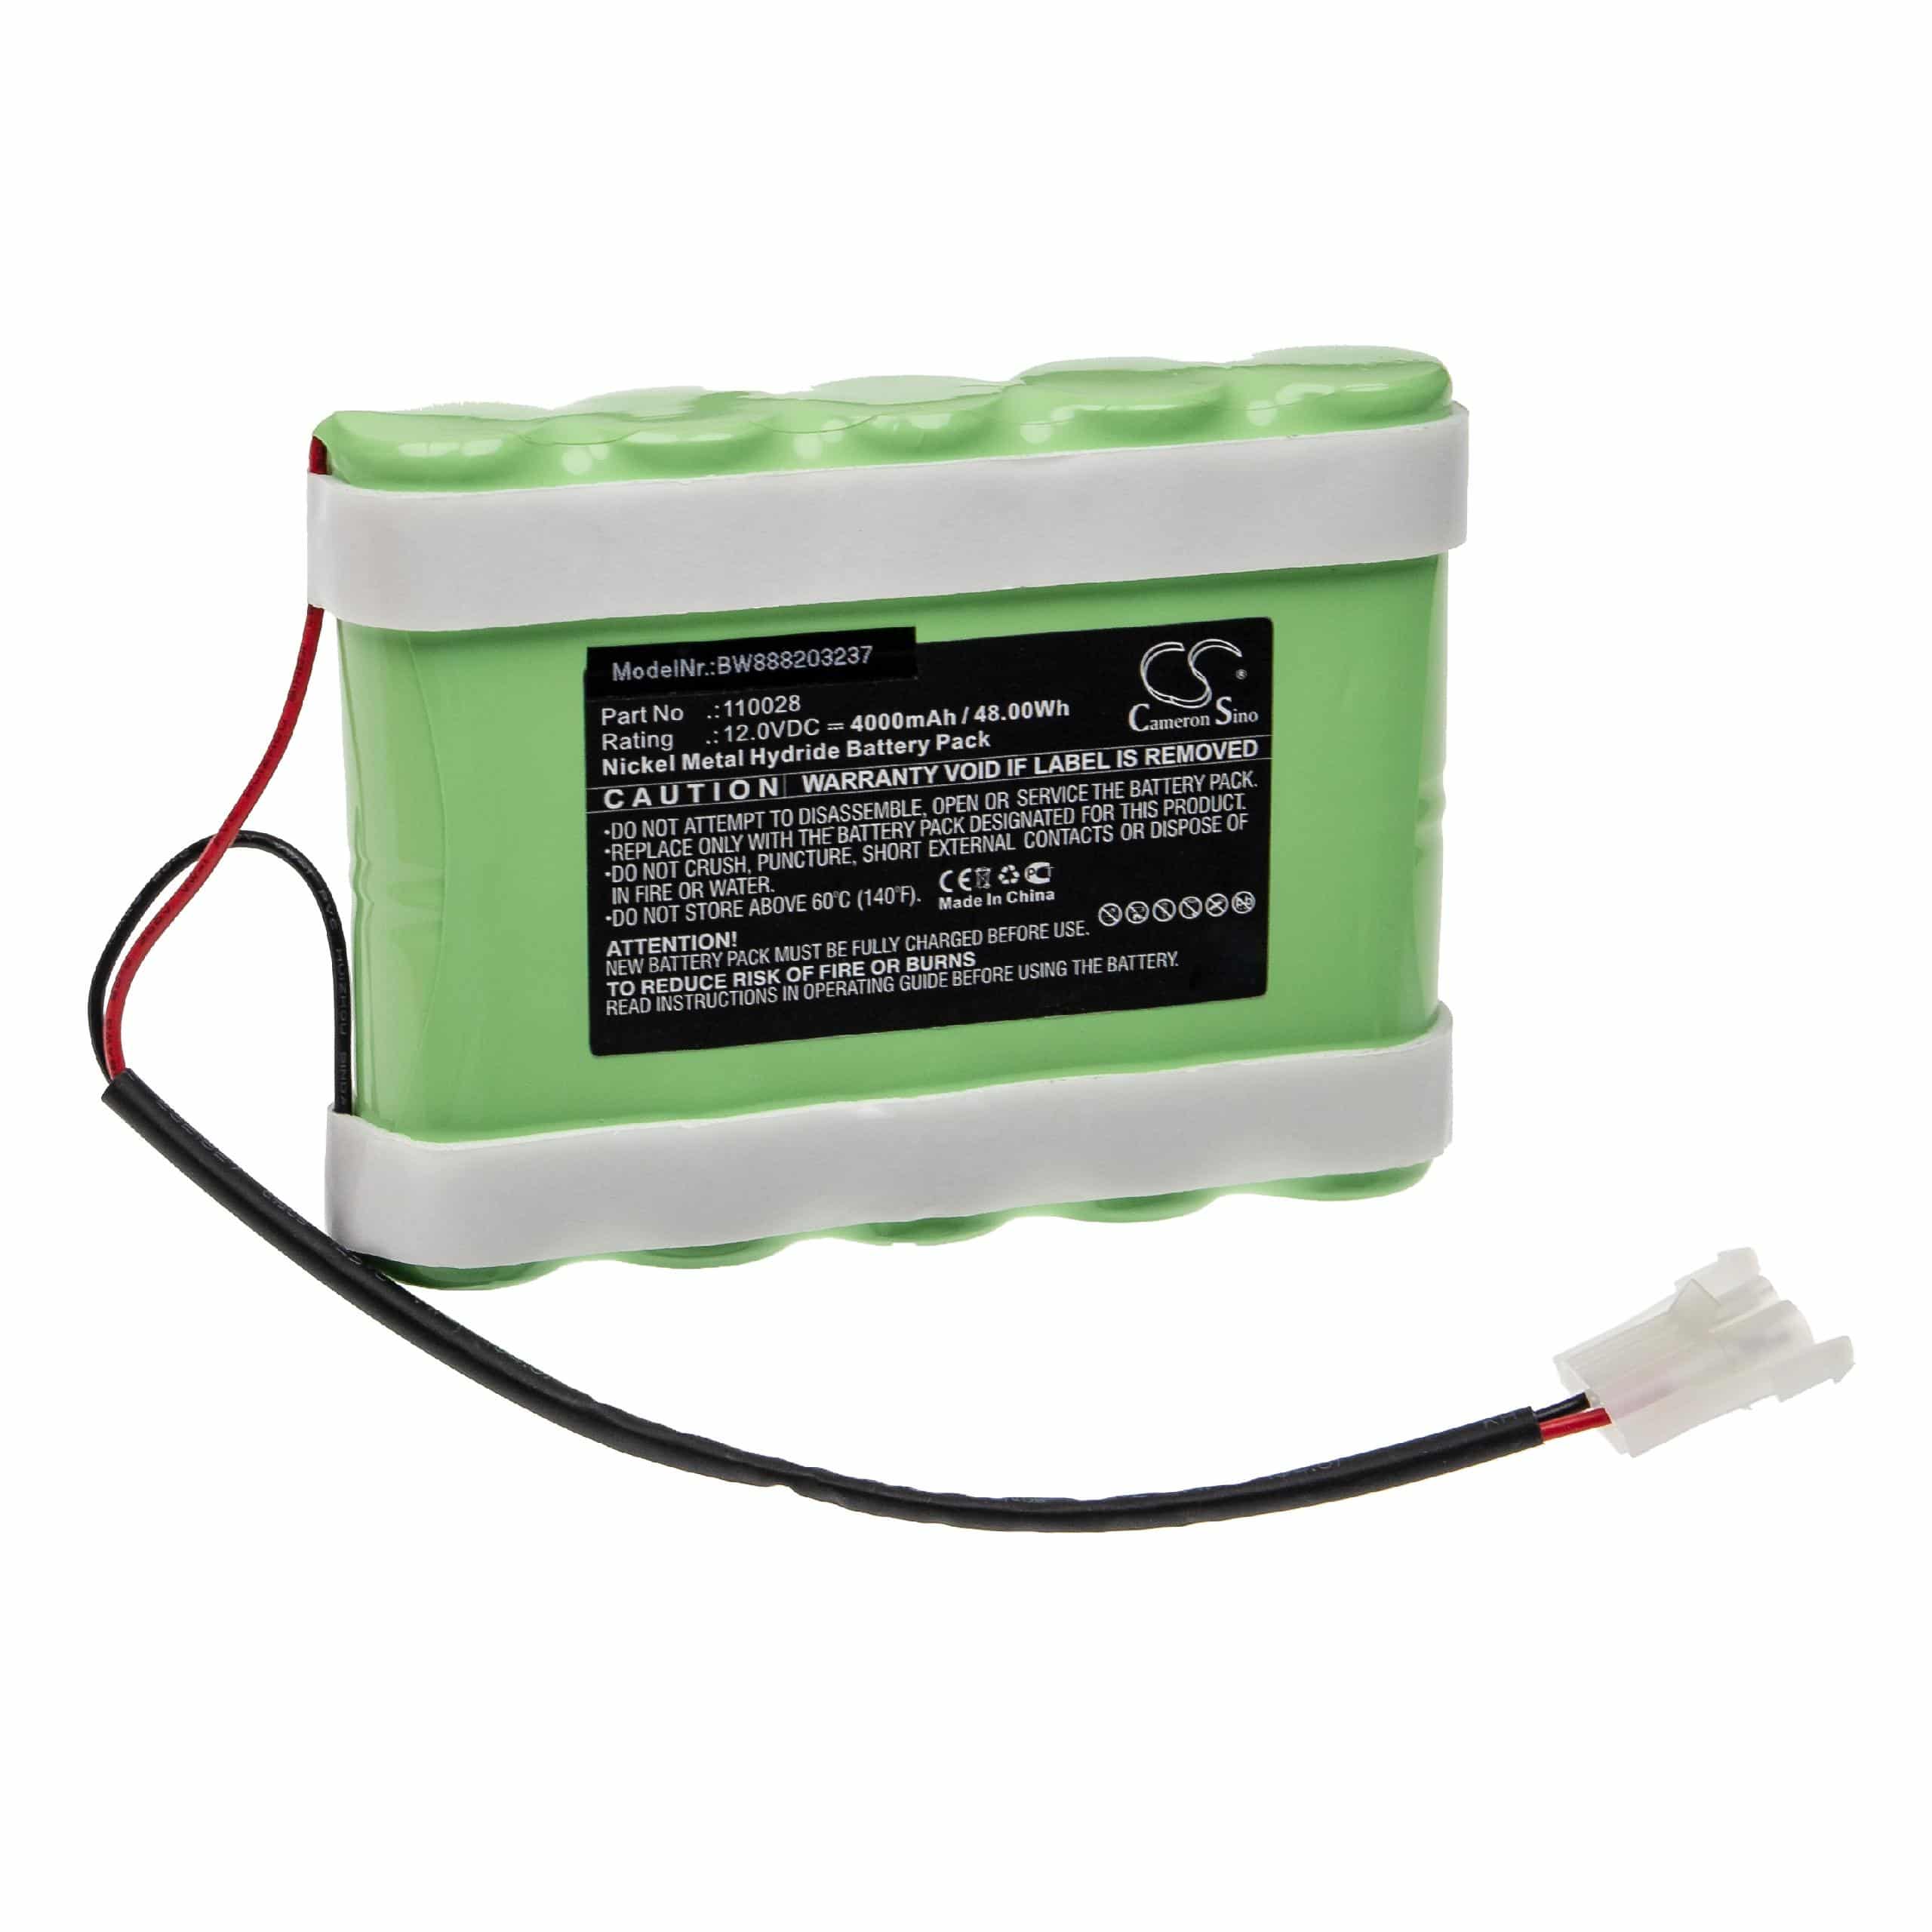 Batterie remplace Hellige 110028 pour appareil médical - 4000mAh 12V NiMH